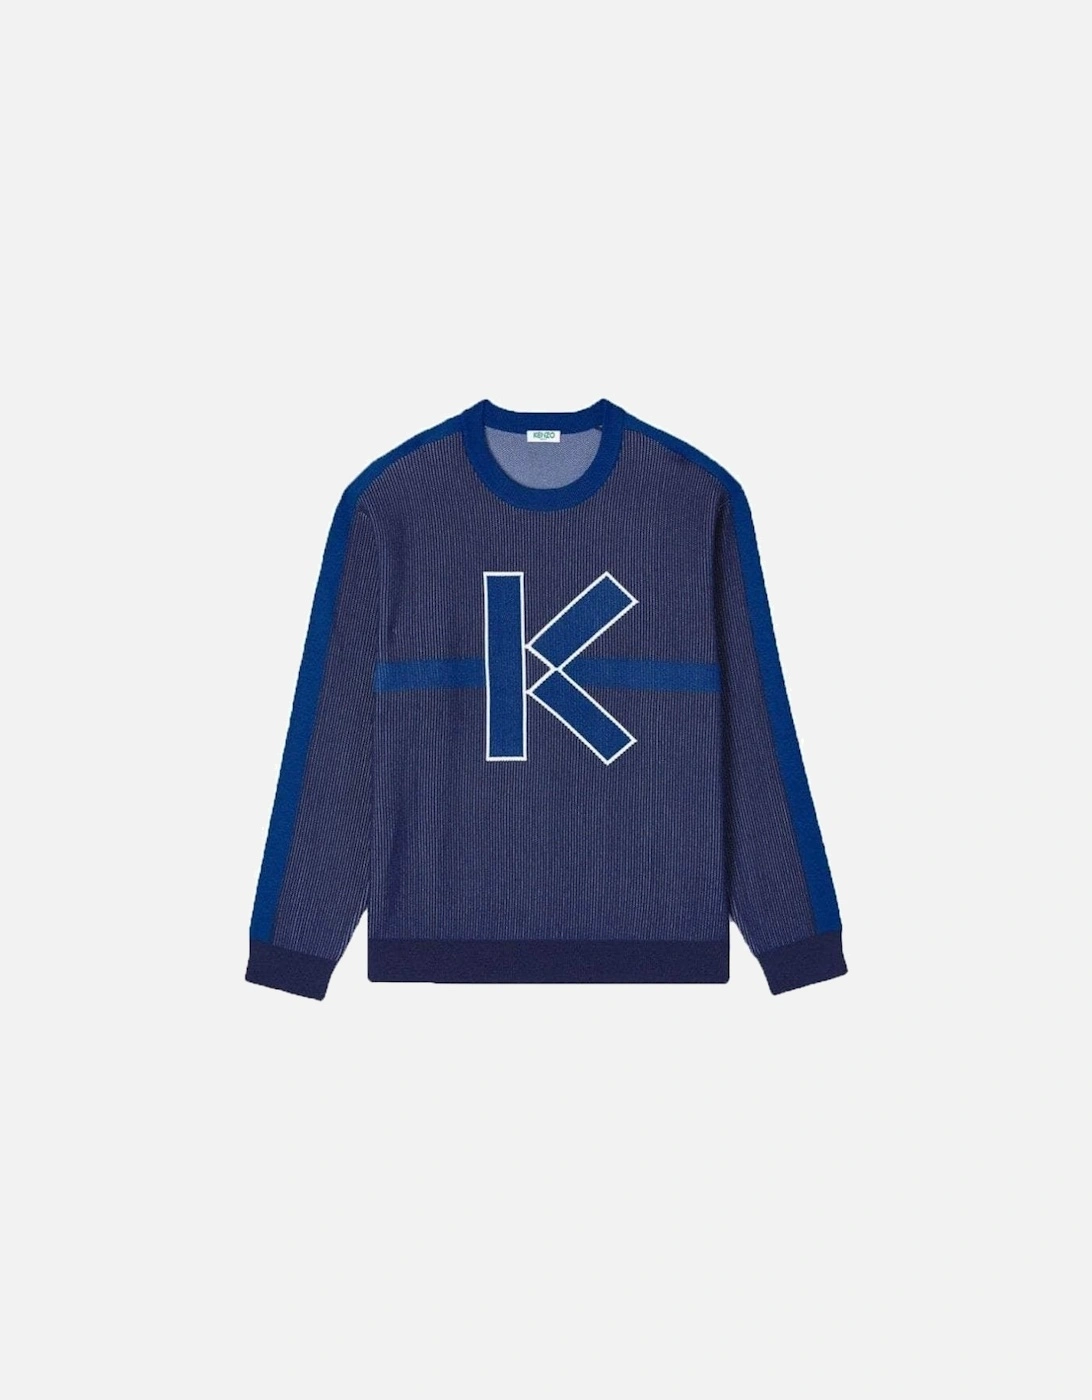 Men's "K" Jacquard Knitwear Blue, 3 of 2